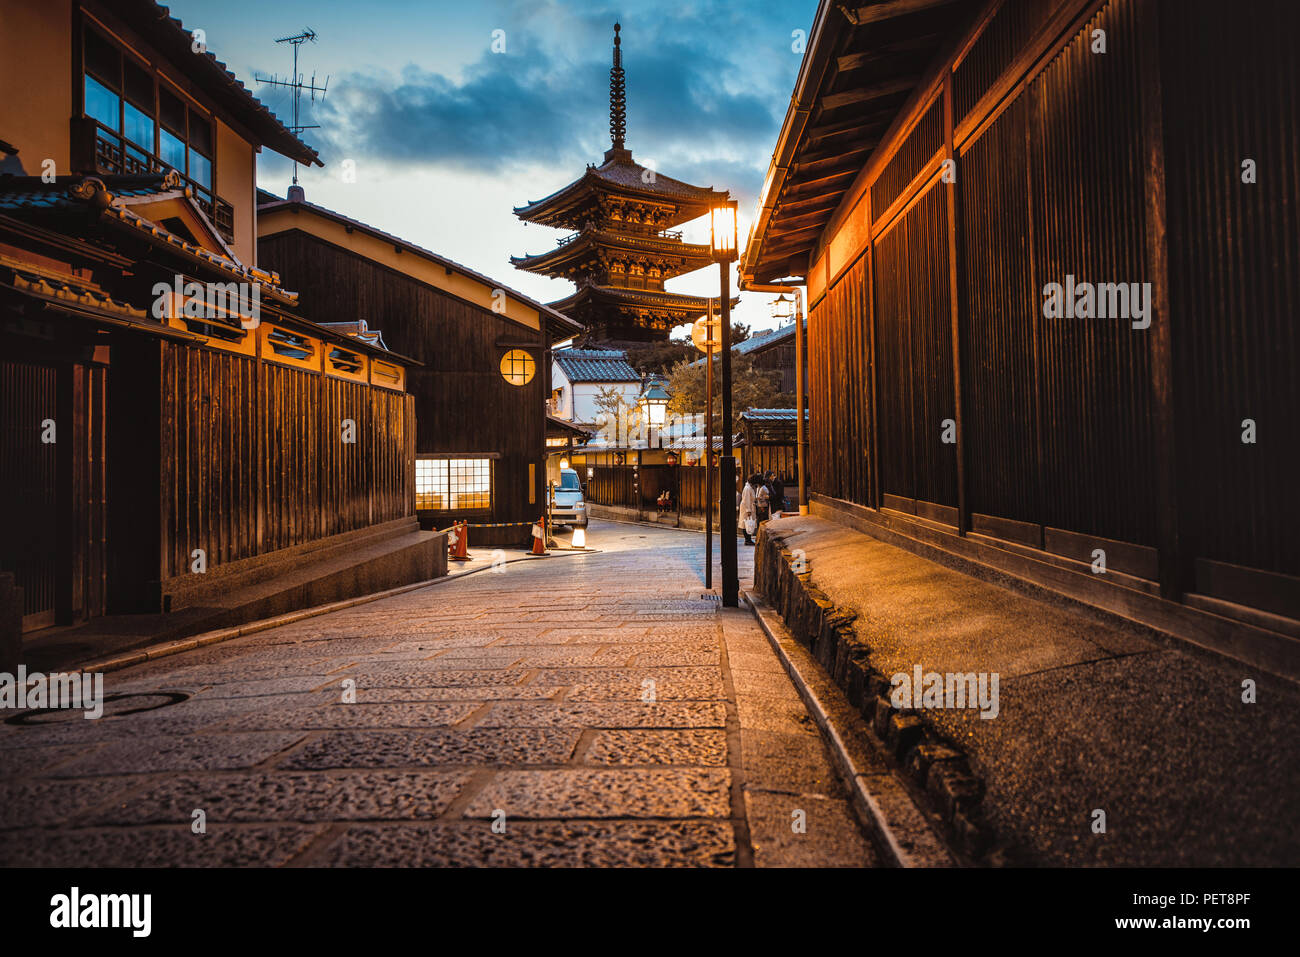 La pagode du temple de Kyoto dans les rues du village Banque D'Images